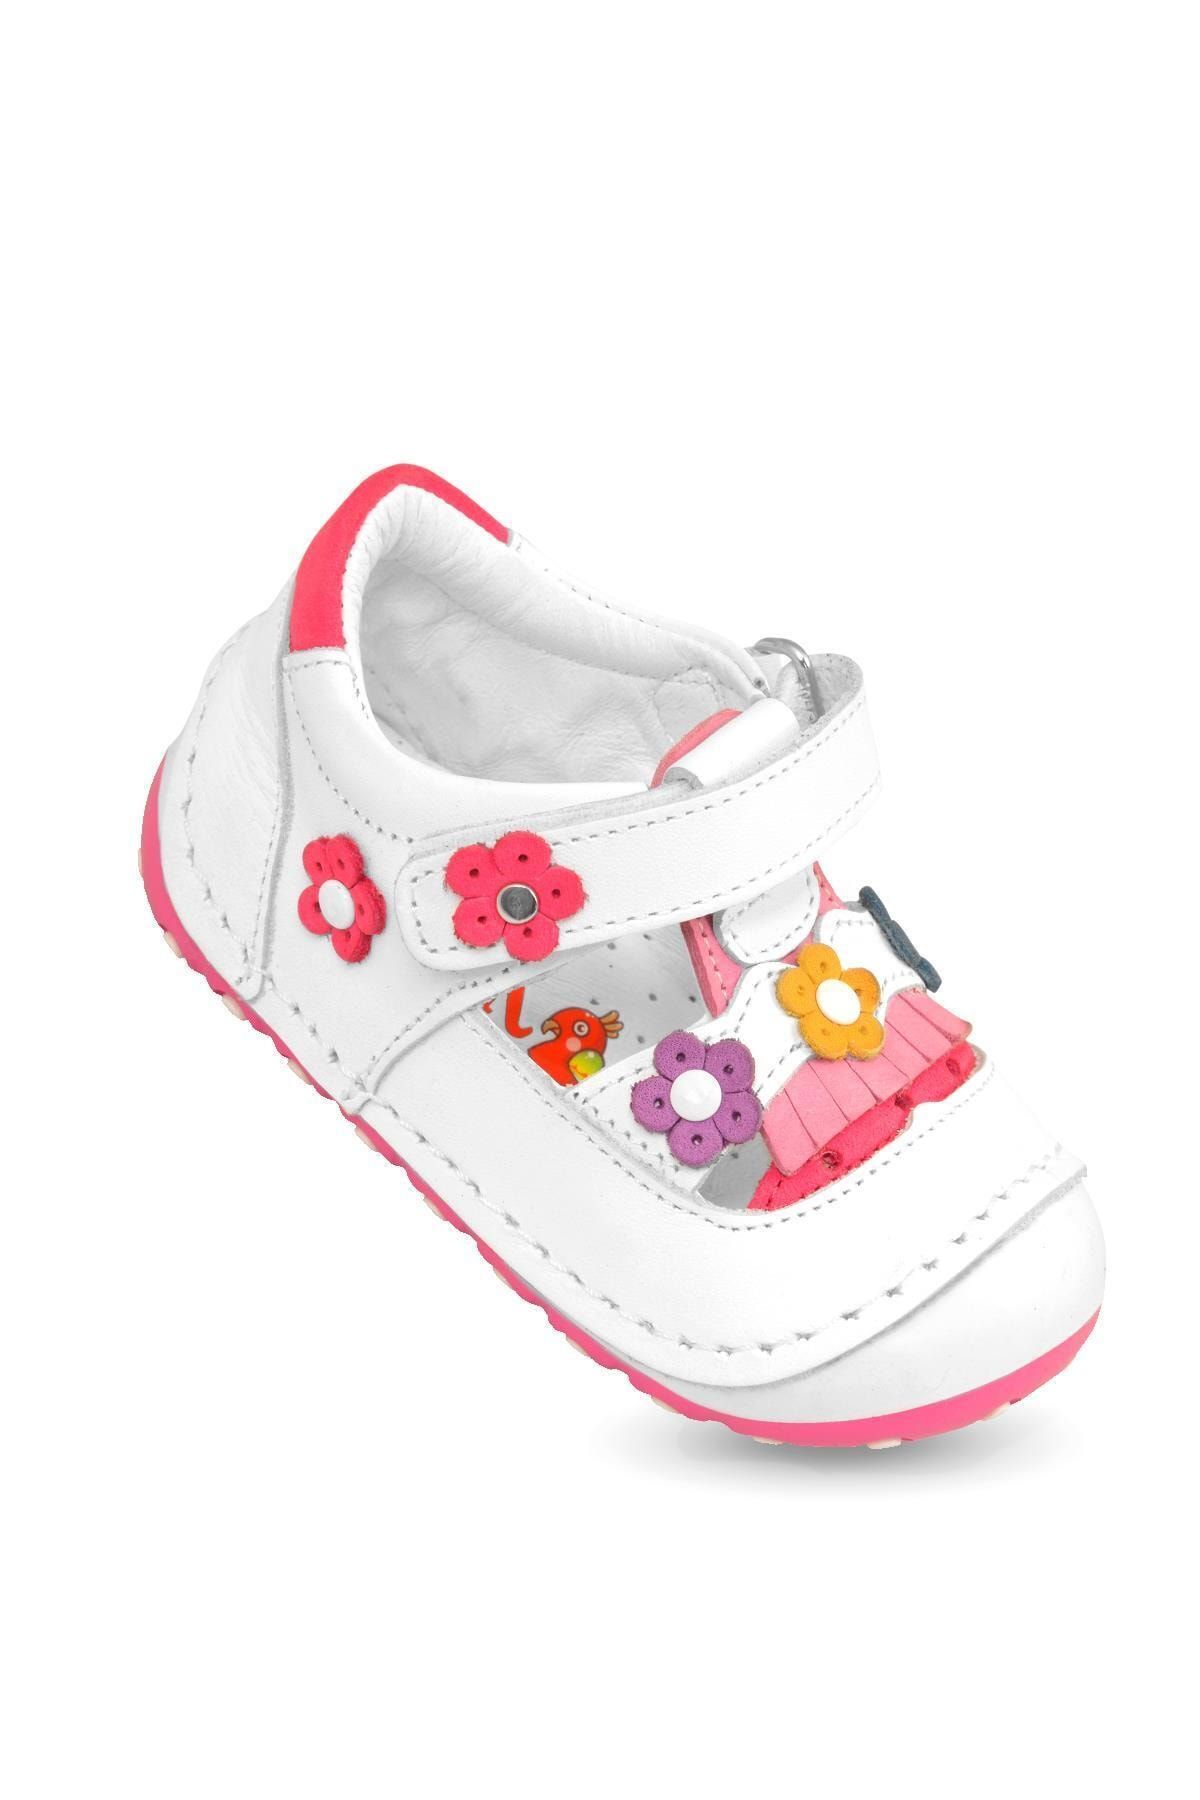 KAPTAN JUNIOR Ilkadım Hakiki Deri Kız Bebek Çocuk Ortopedik Ayakkabı Patik Imsk 603 Beyaz